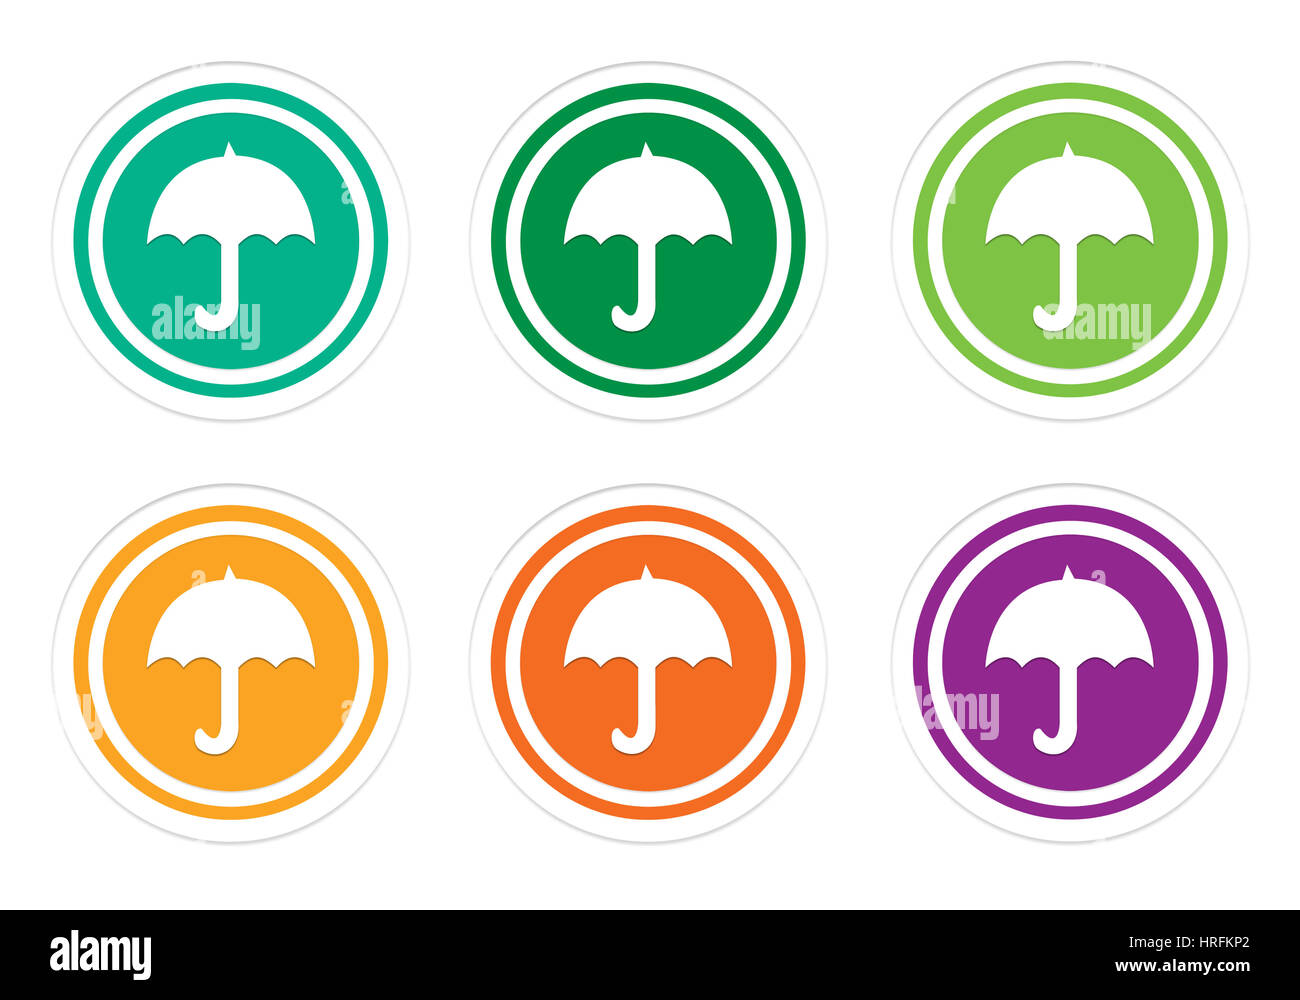 Bunte Runde Icons mit Regenschirm-Symbol in grün, gelb, orange und lila Farben Stockfoto